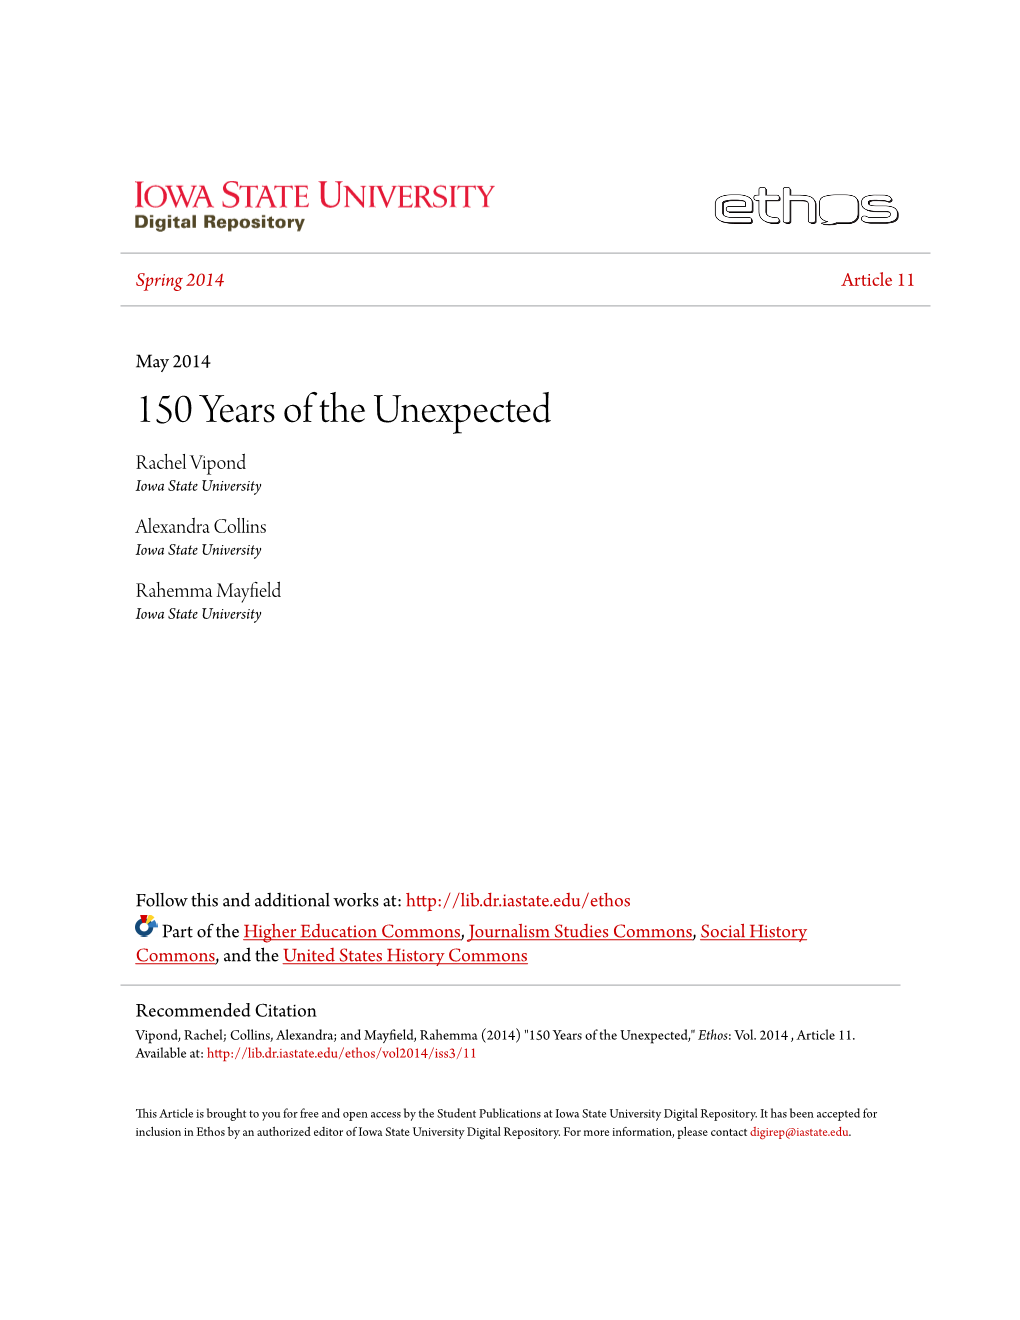 150 Years of the Unexpected Rachel Vipond Iowa State University